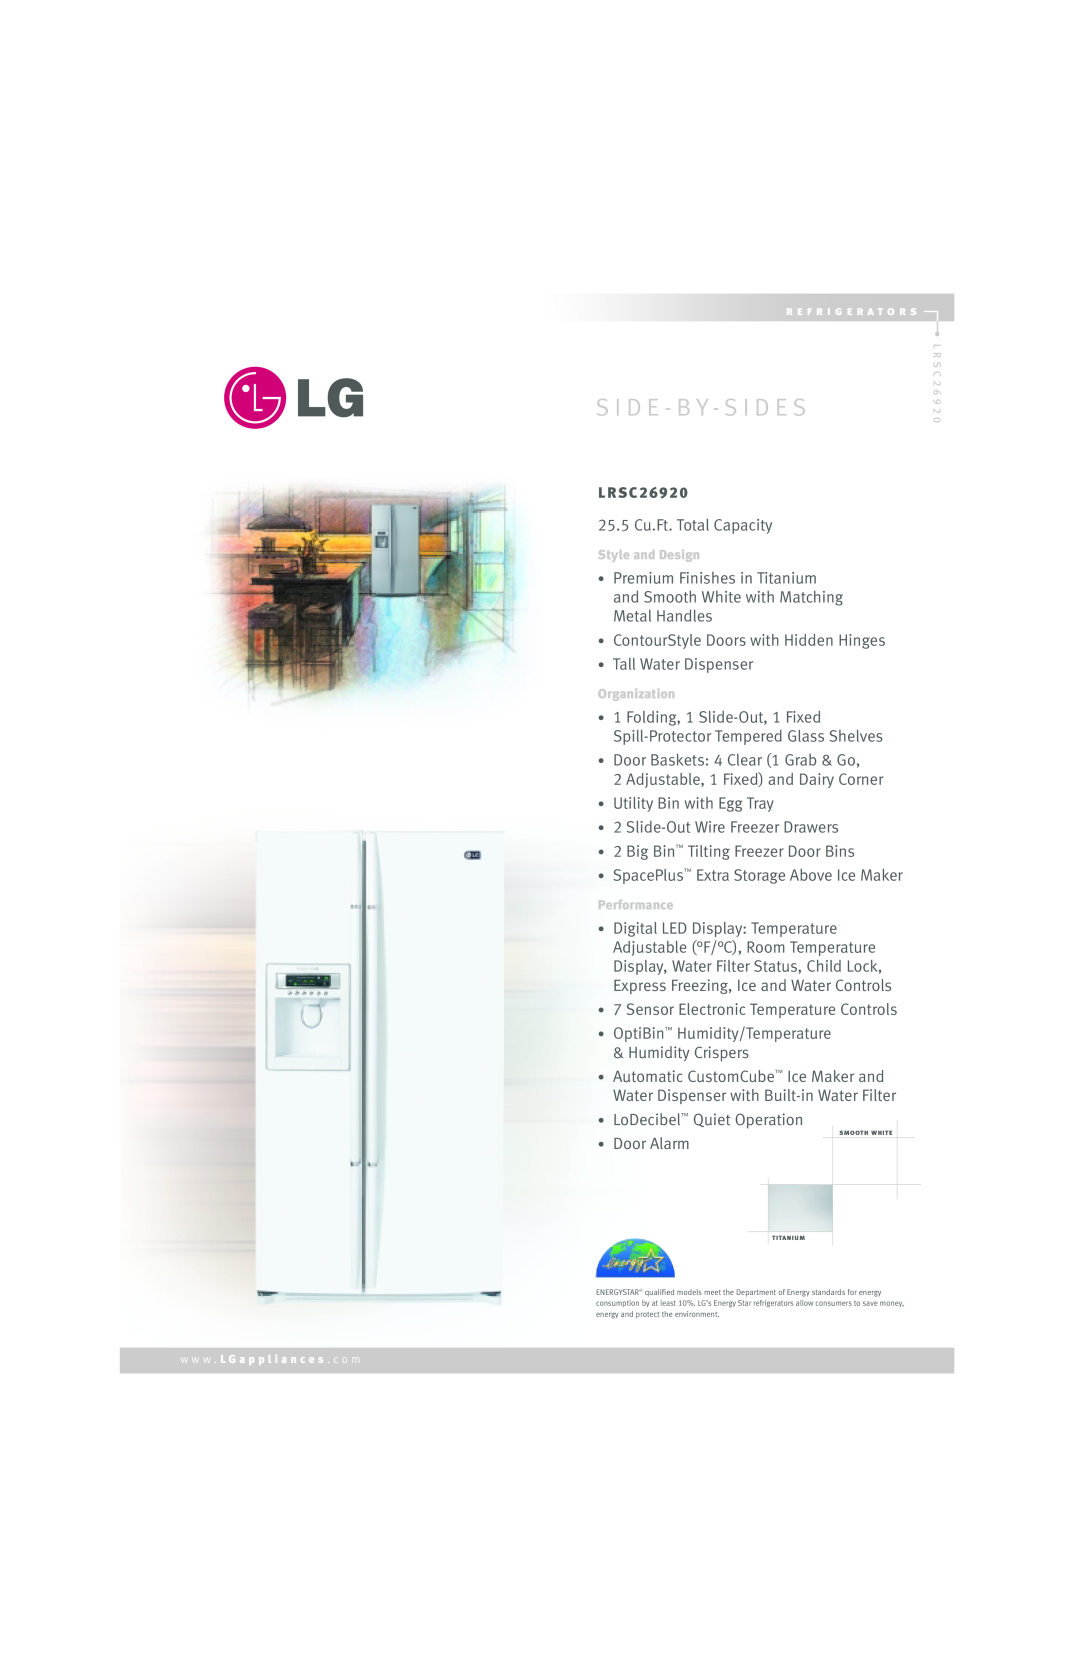 LG Electronics LRSC26920 manual S I D E - B Y - S I D E S 